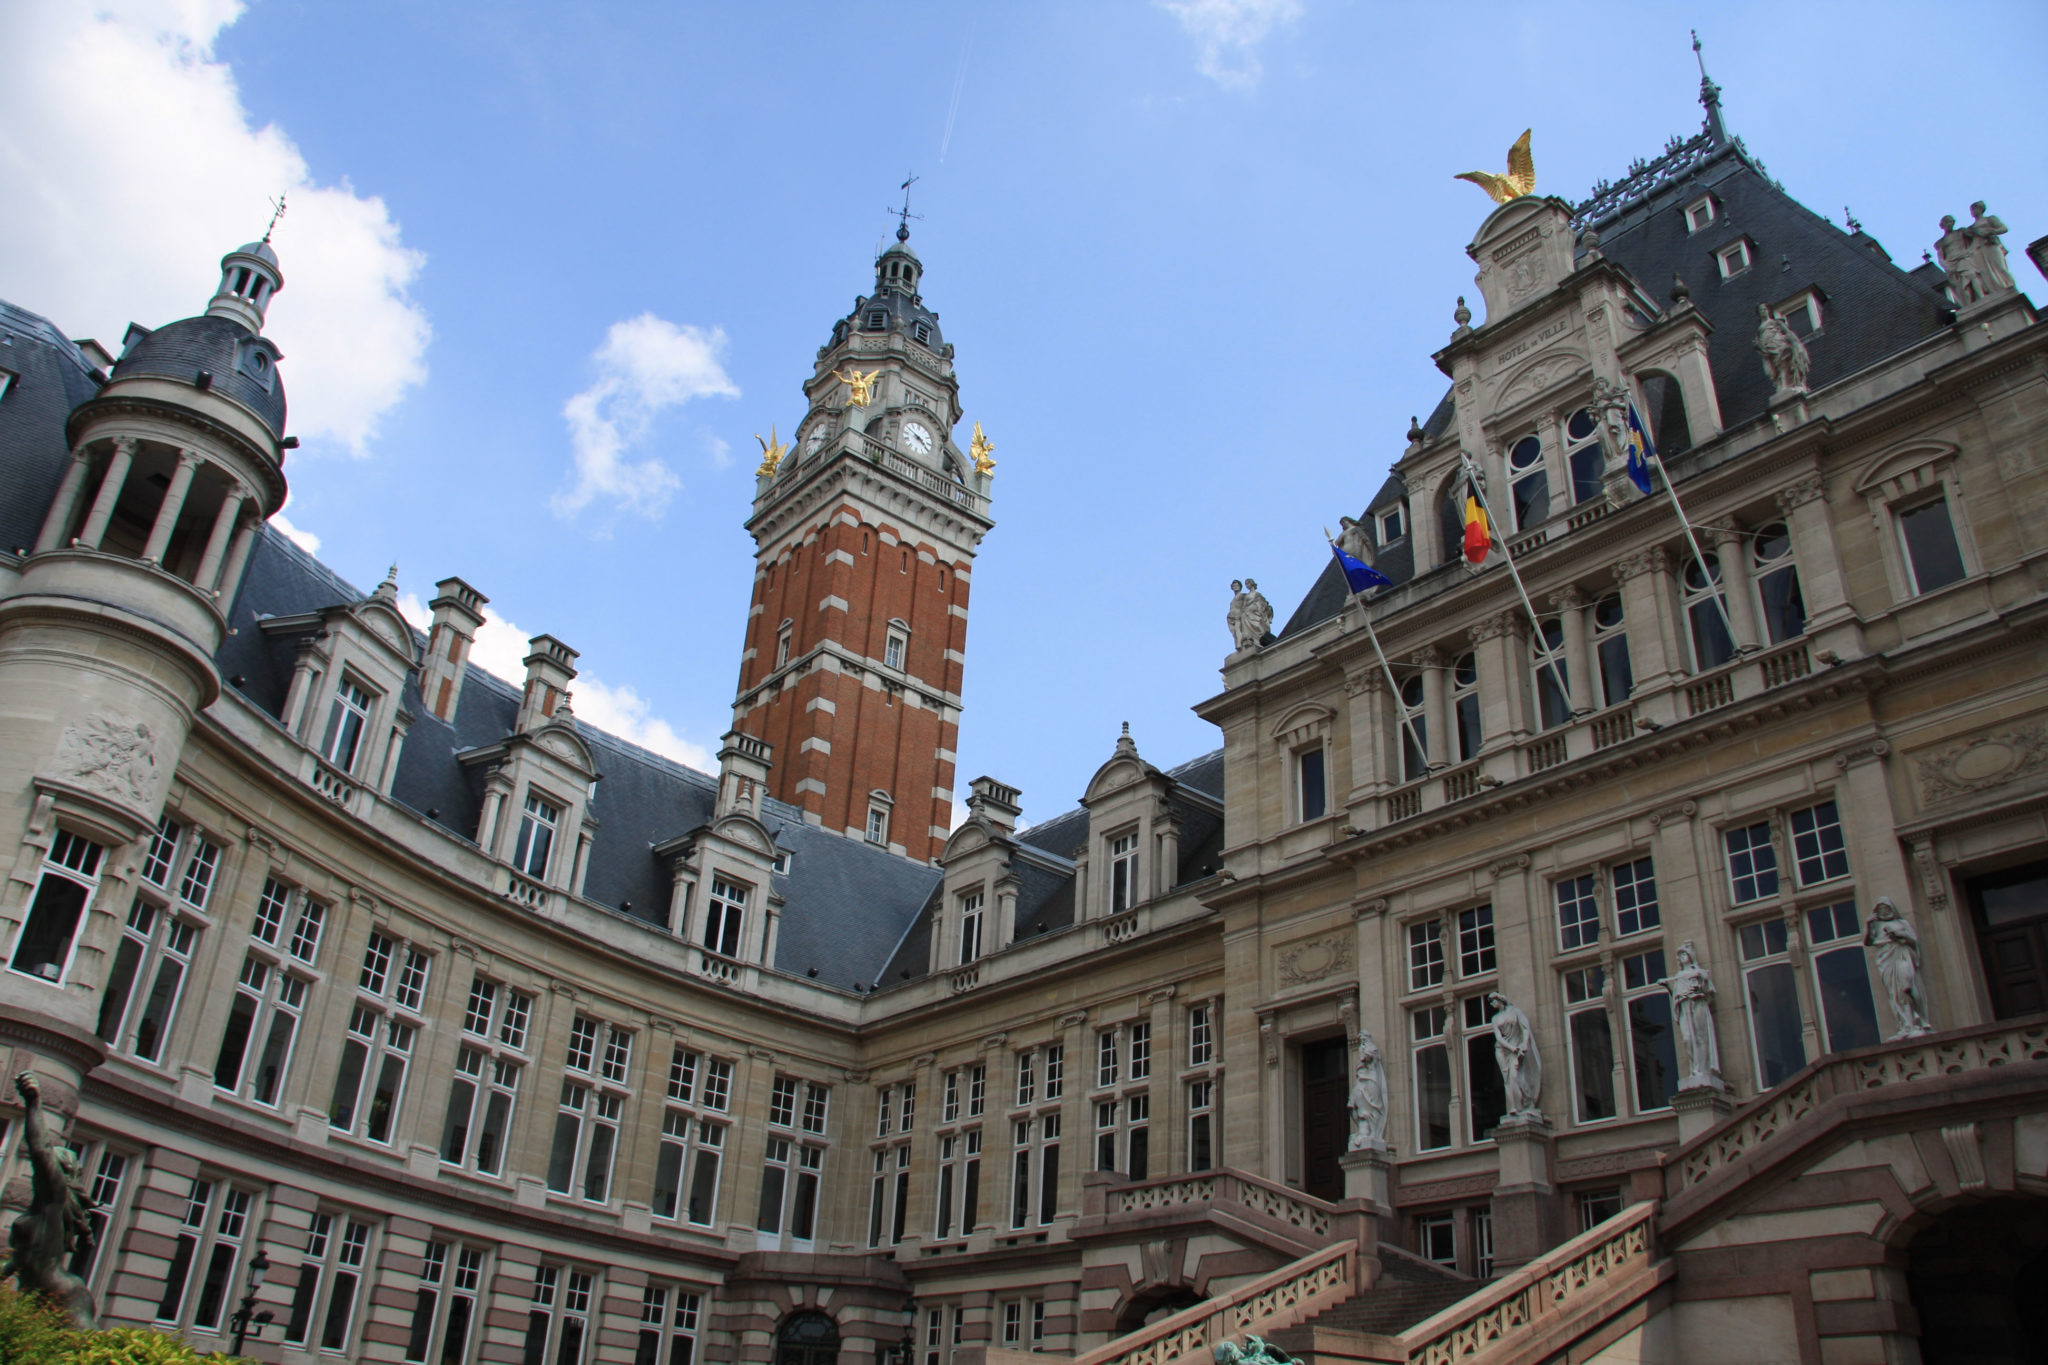 L'Hôtel de ville de Saint-Gilles (source: Brusselspictures)